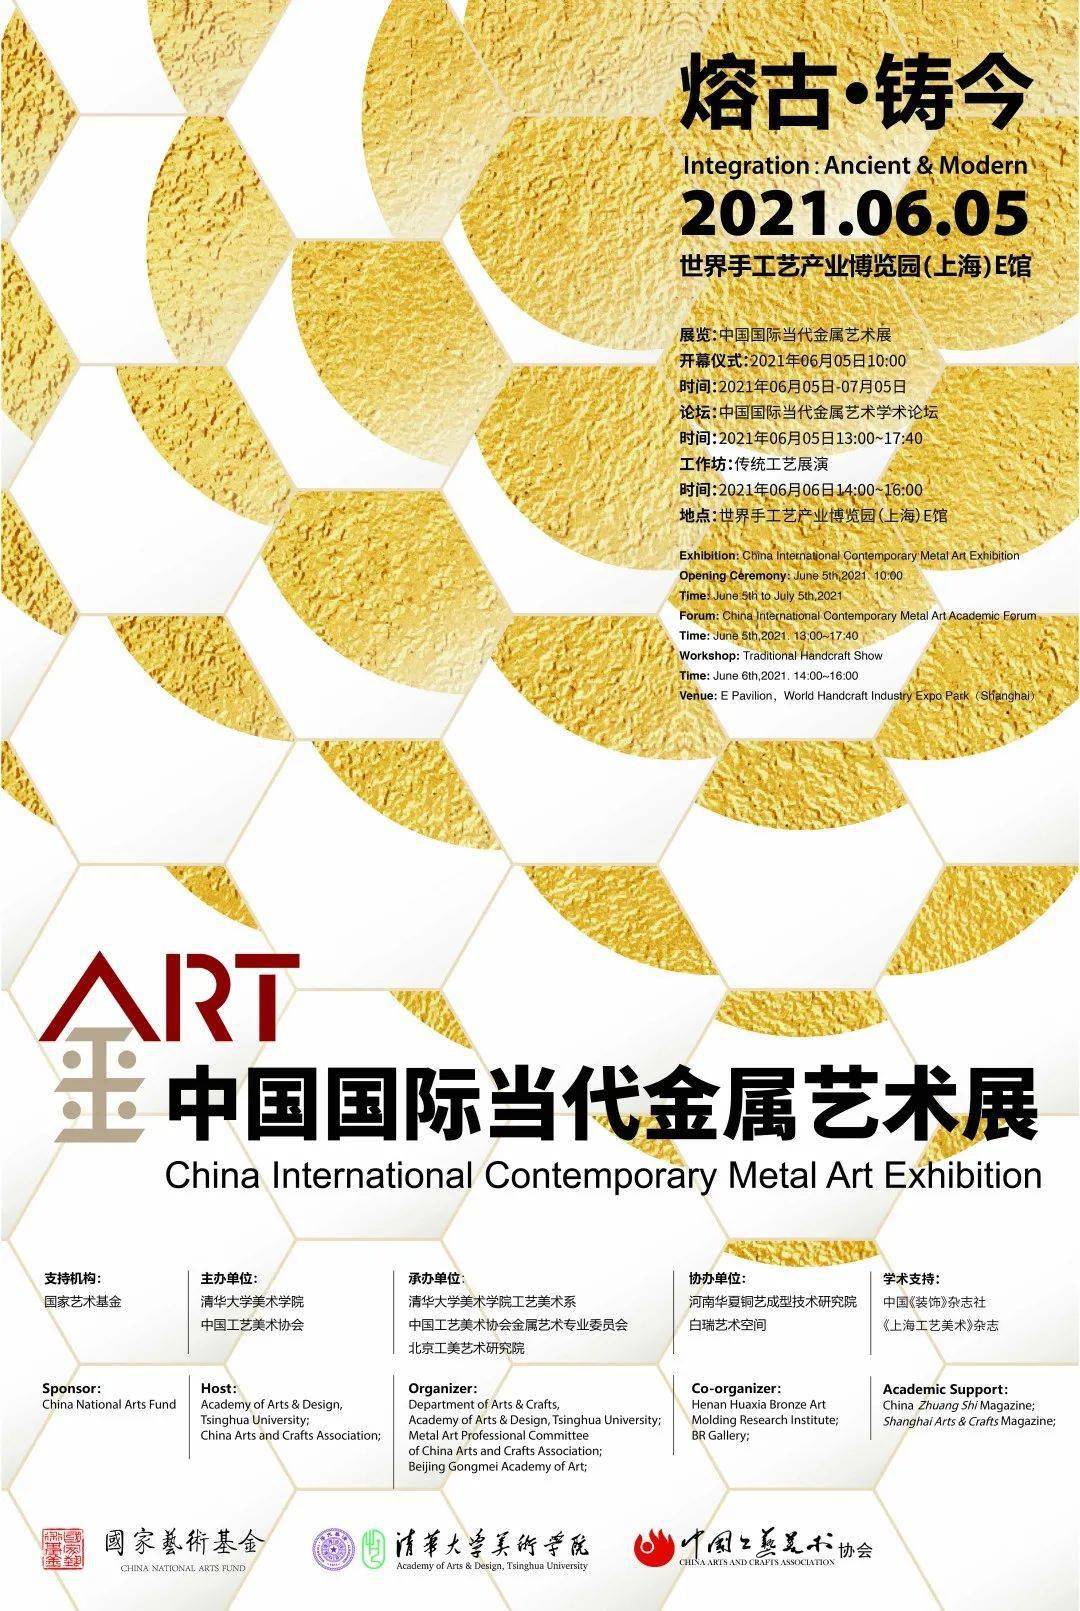 展览海报展览中国国际当代金属艺术展开幕仪式2021年06月05日10:00